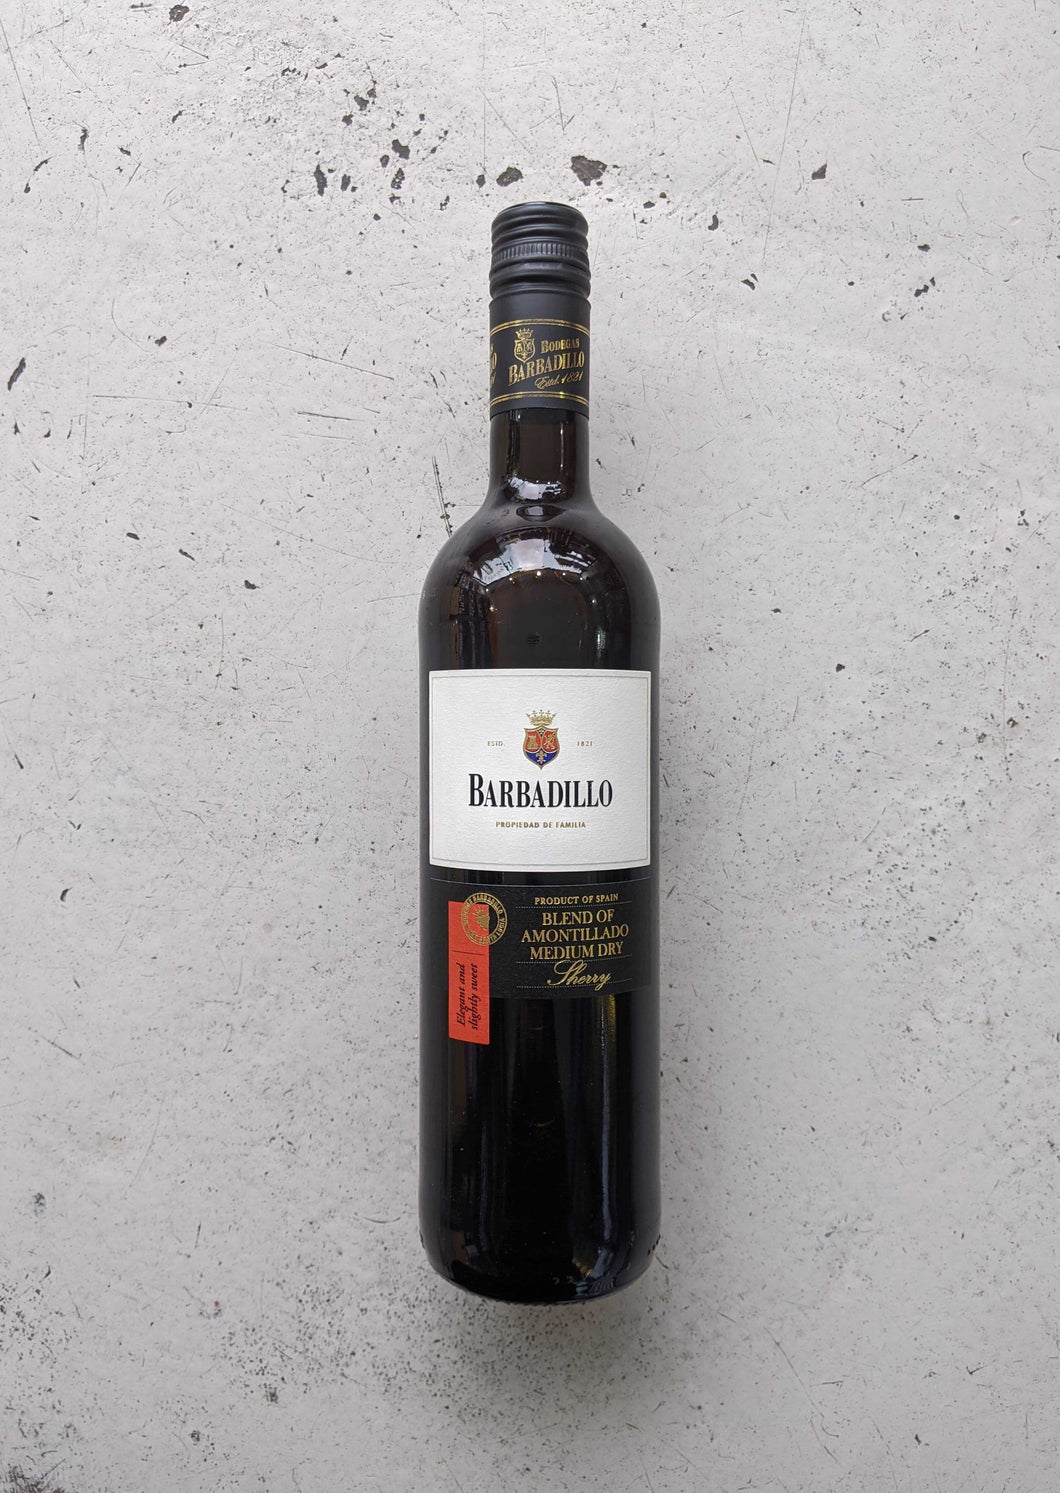 Barbadillo Amontillado 17.5% (750ml)